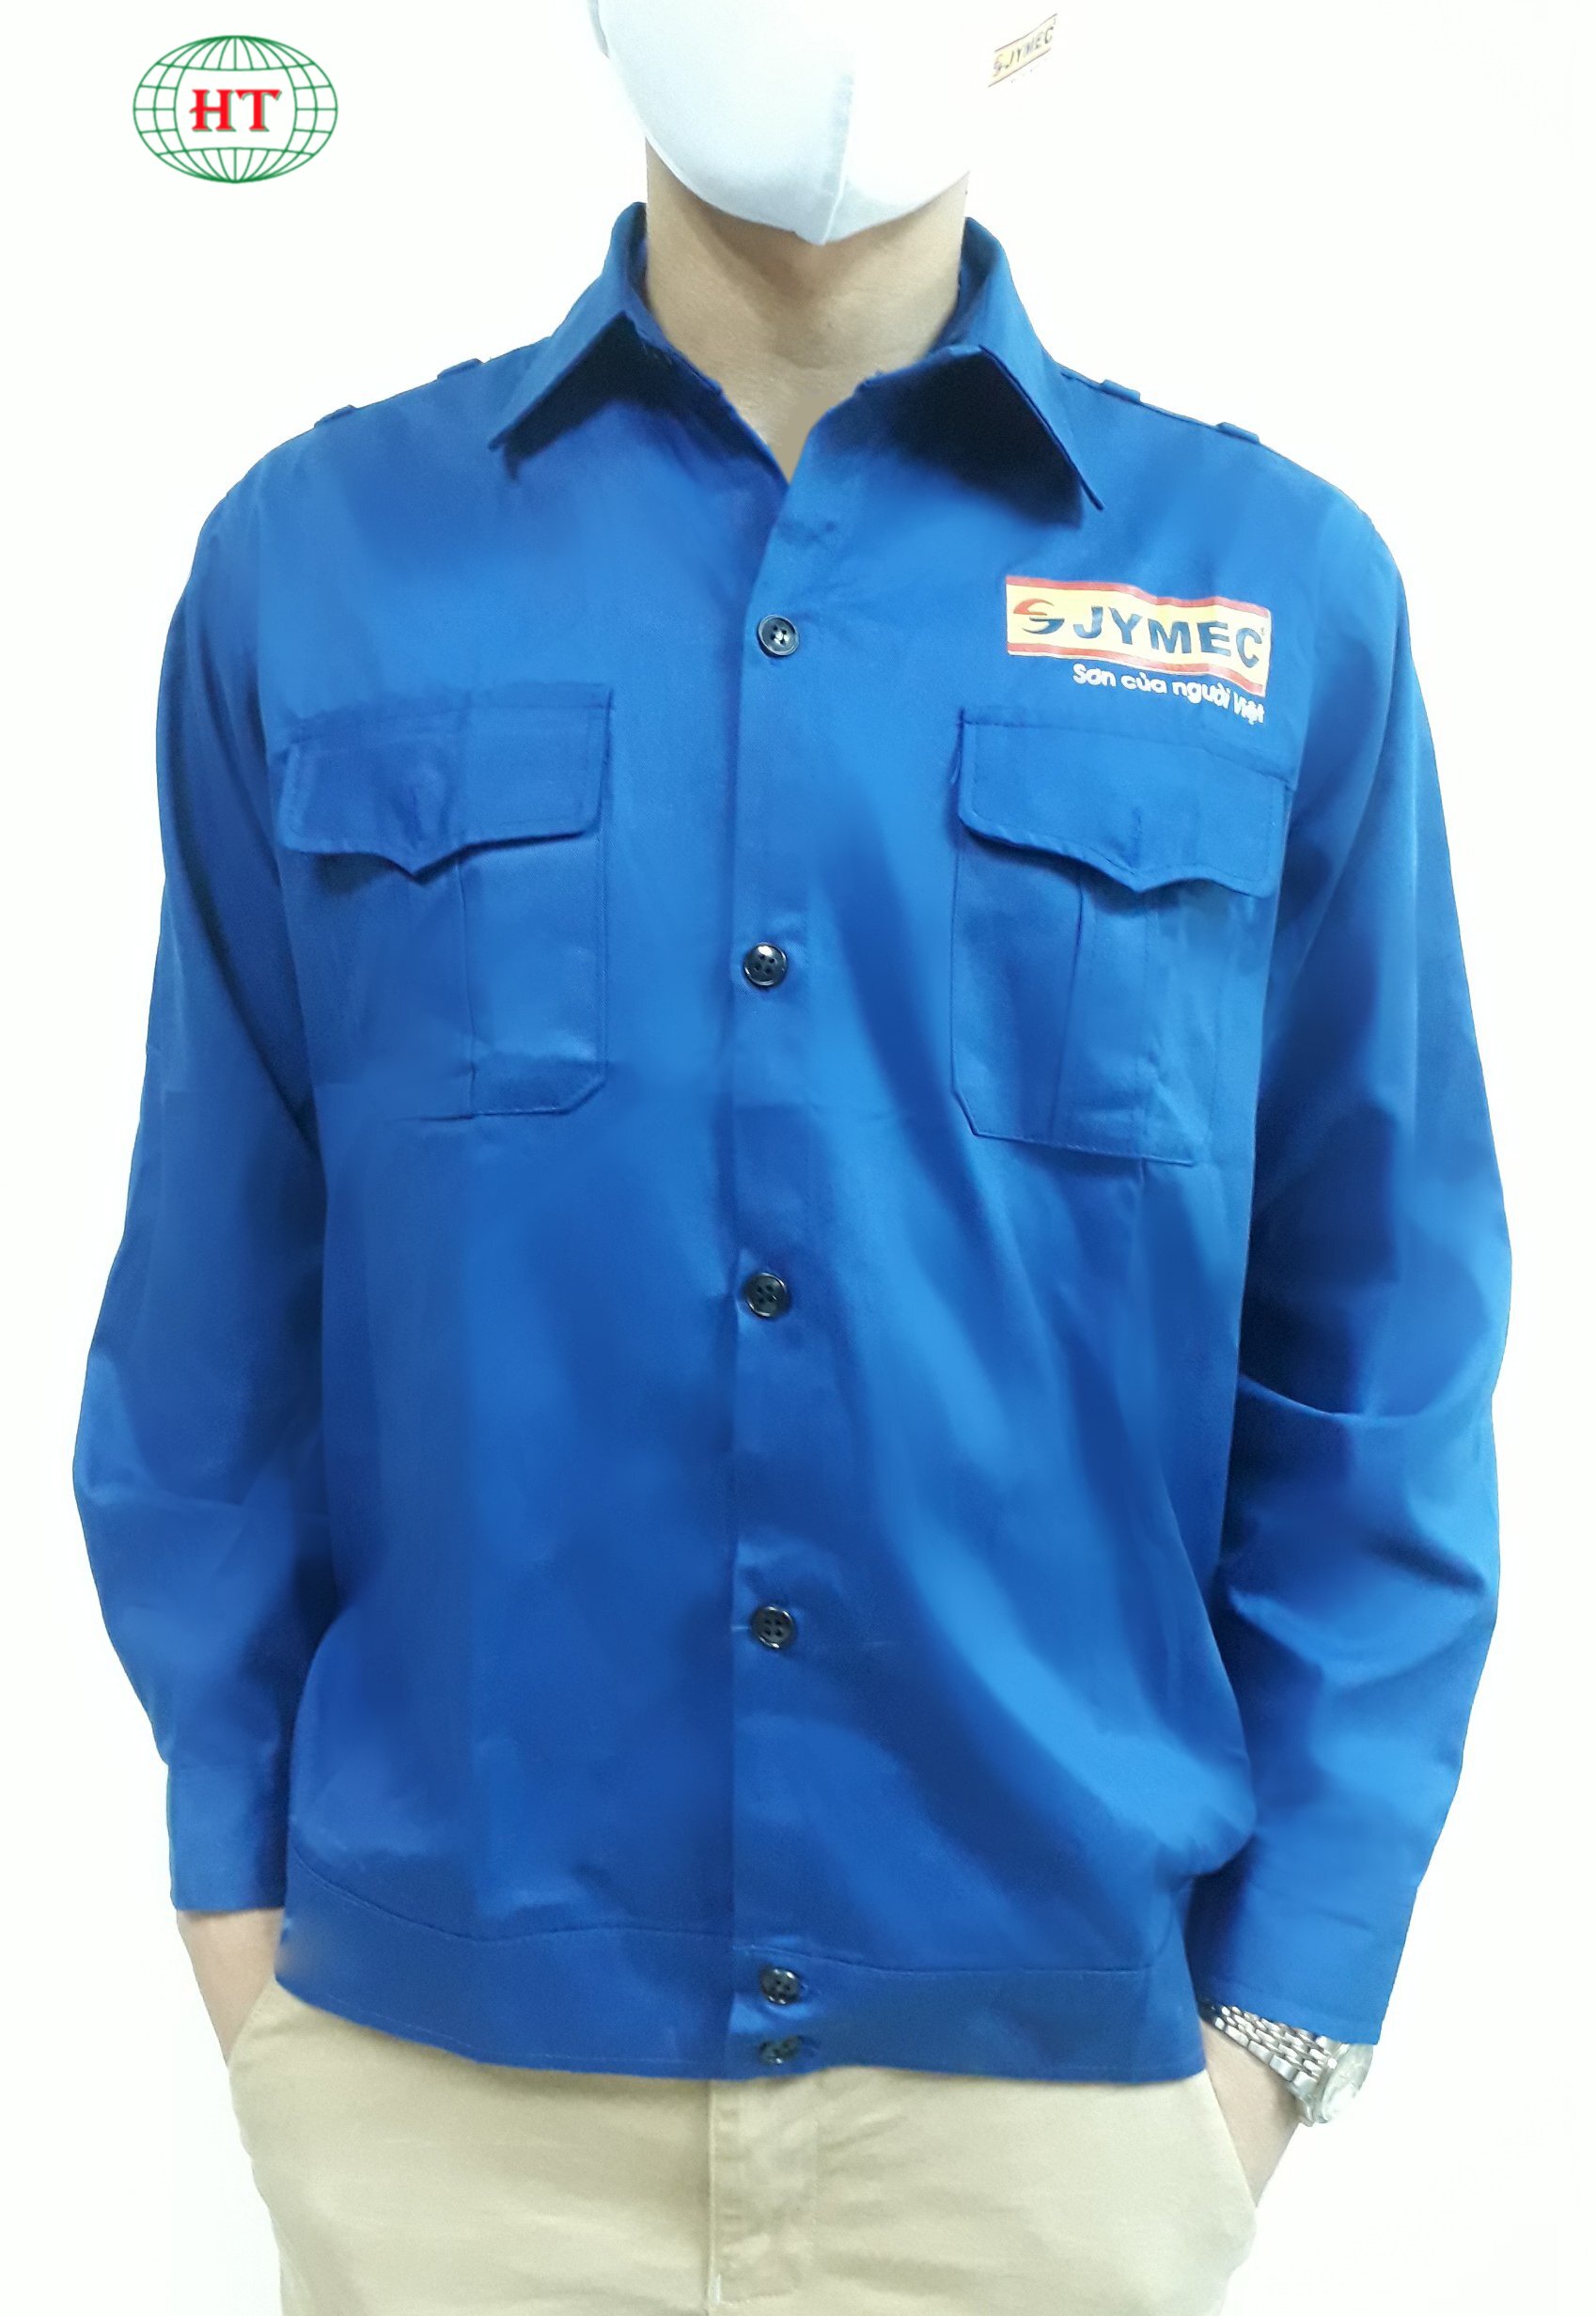 Quần áo công nhân - Xưởng may Huy Tài - Công Ty Cổ Phần Sản Xuất Và Thương Mại Huy Tài